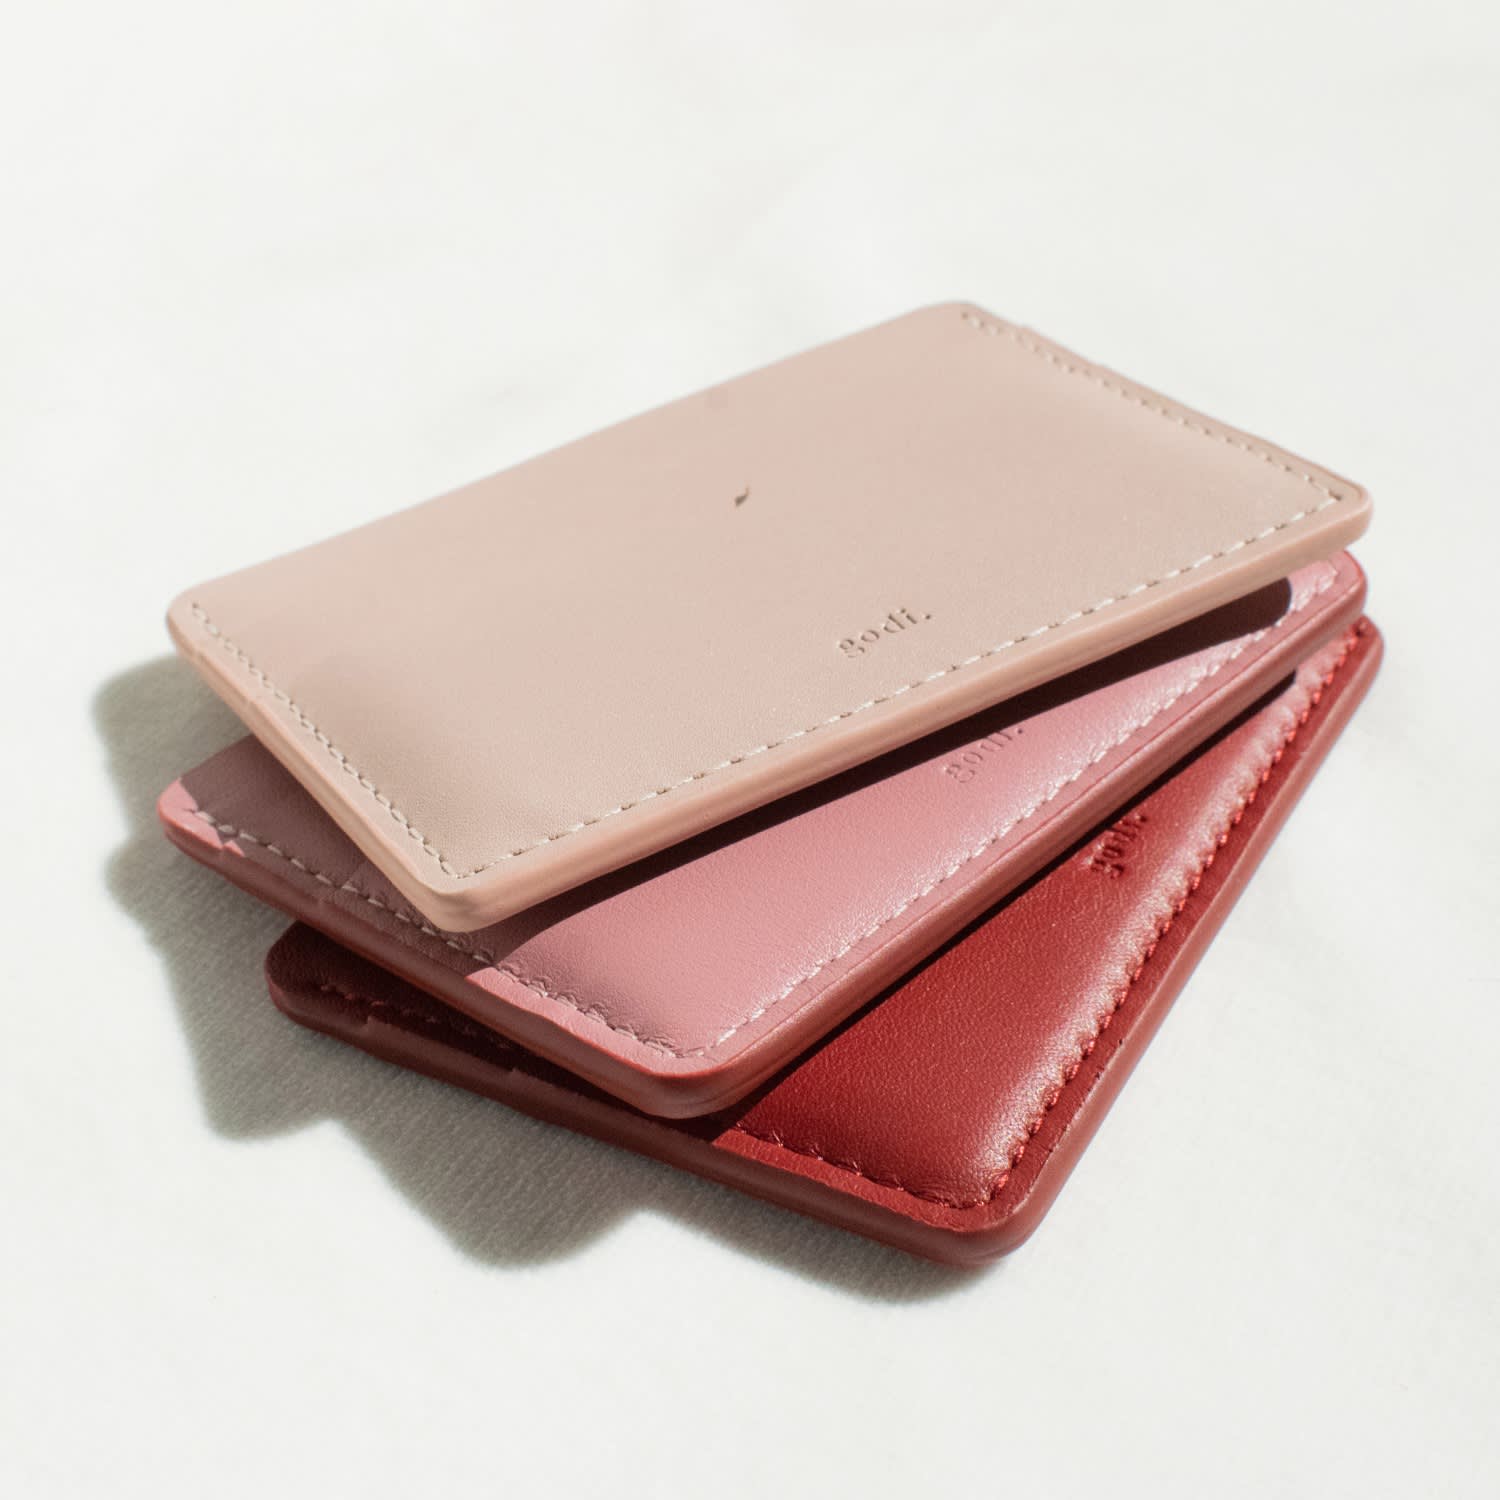 Women's Handmade Leather Wallet Purse